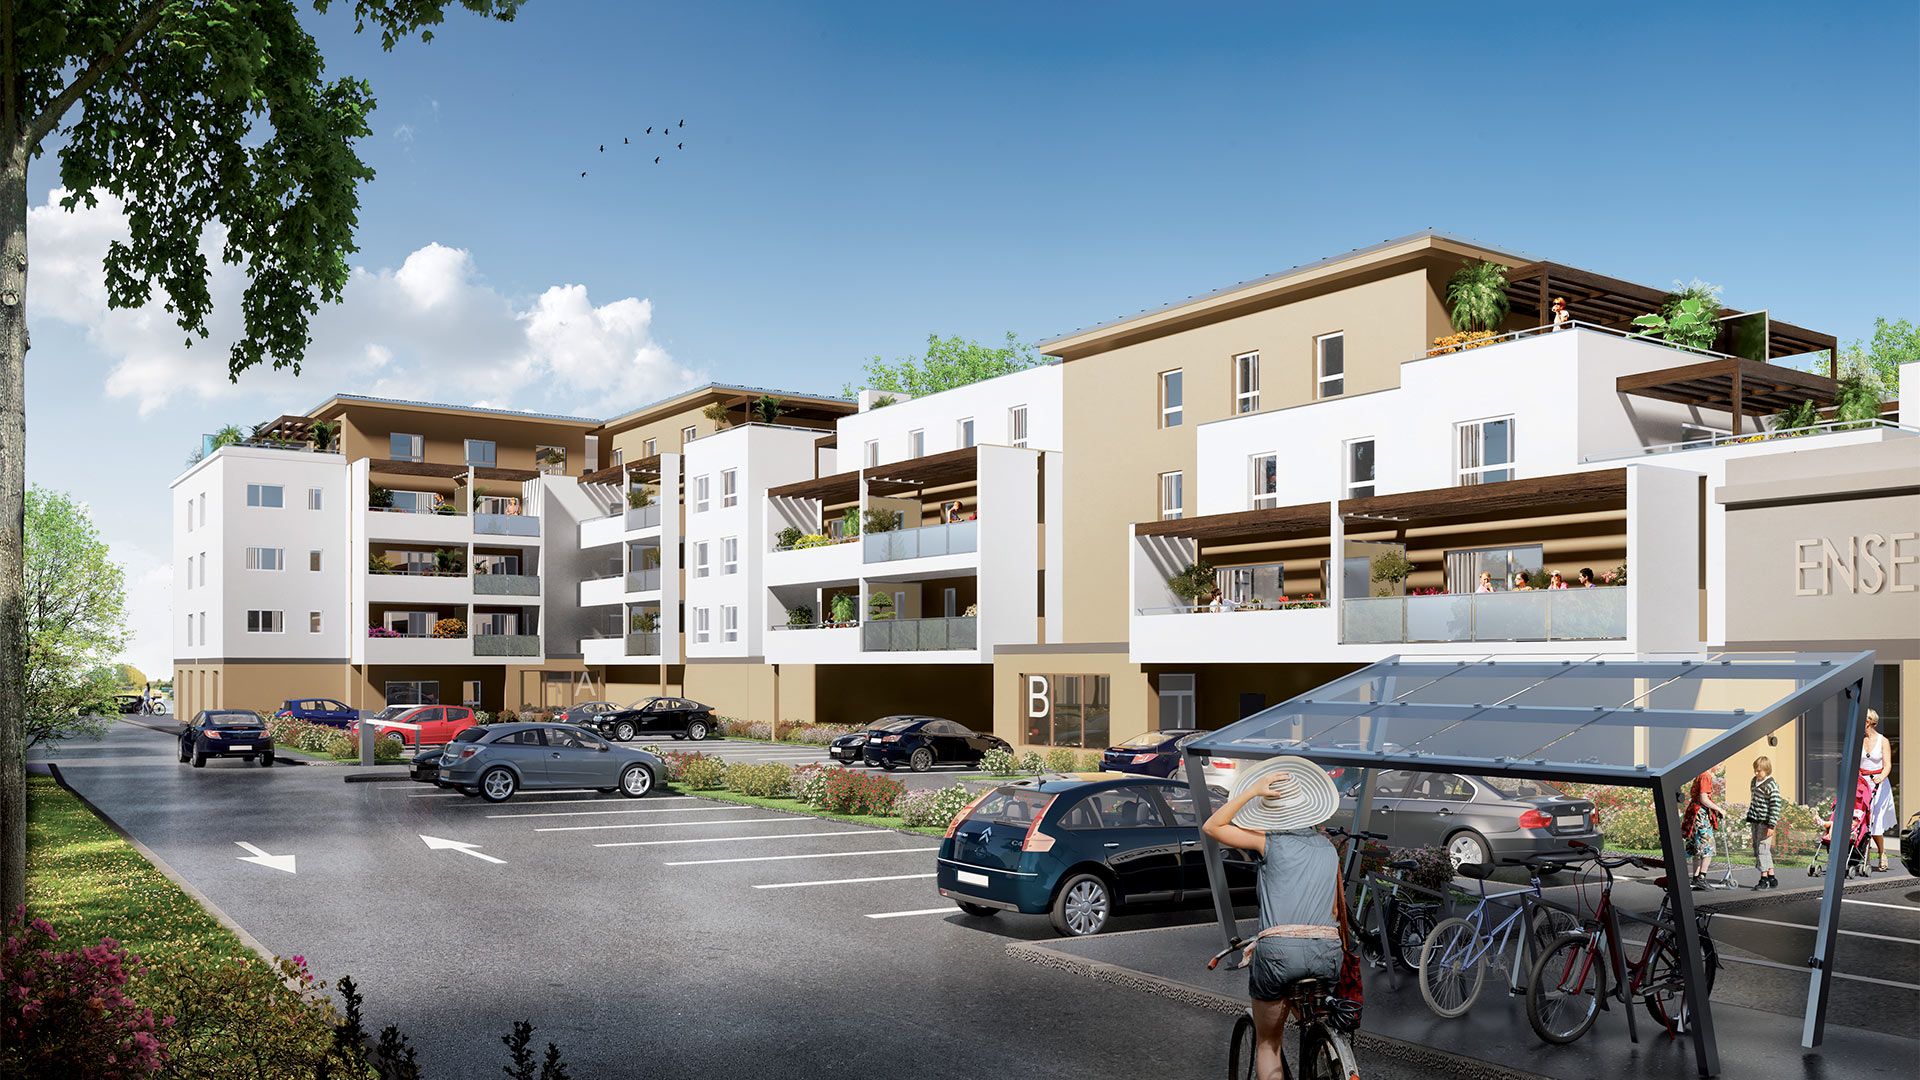 Concept Immobilier - Cœur de Ville - Appartements neufs à Maizières-lès-Metz - Vue extérieure